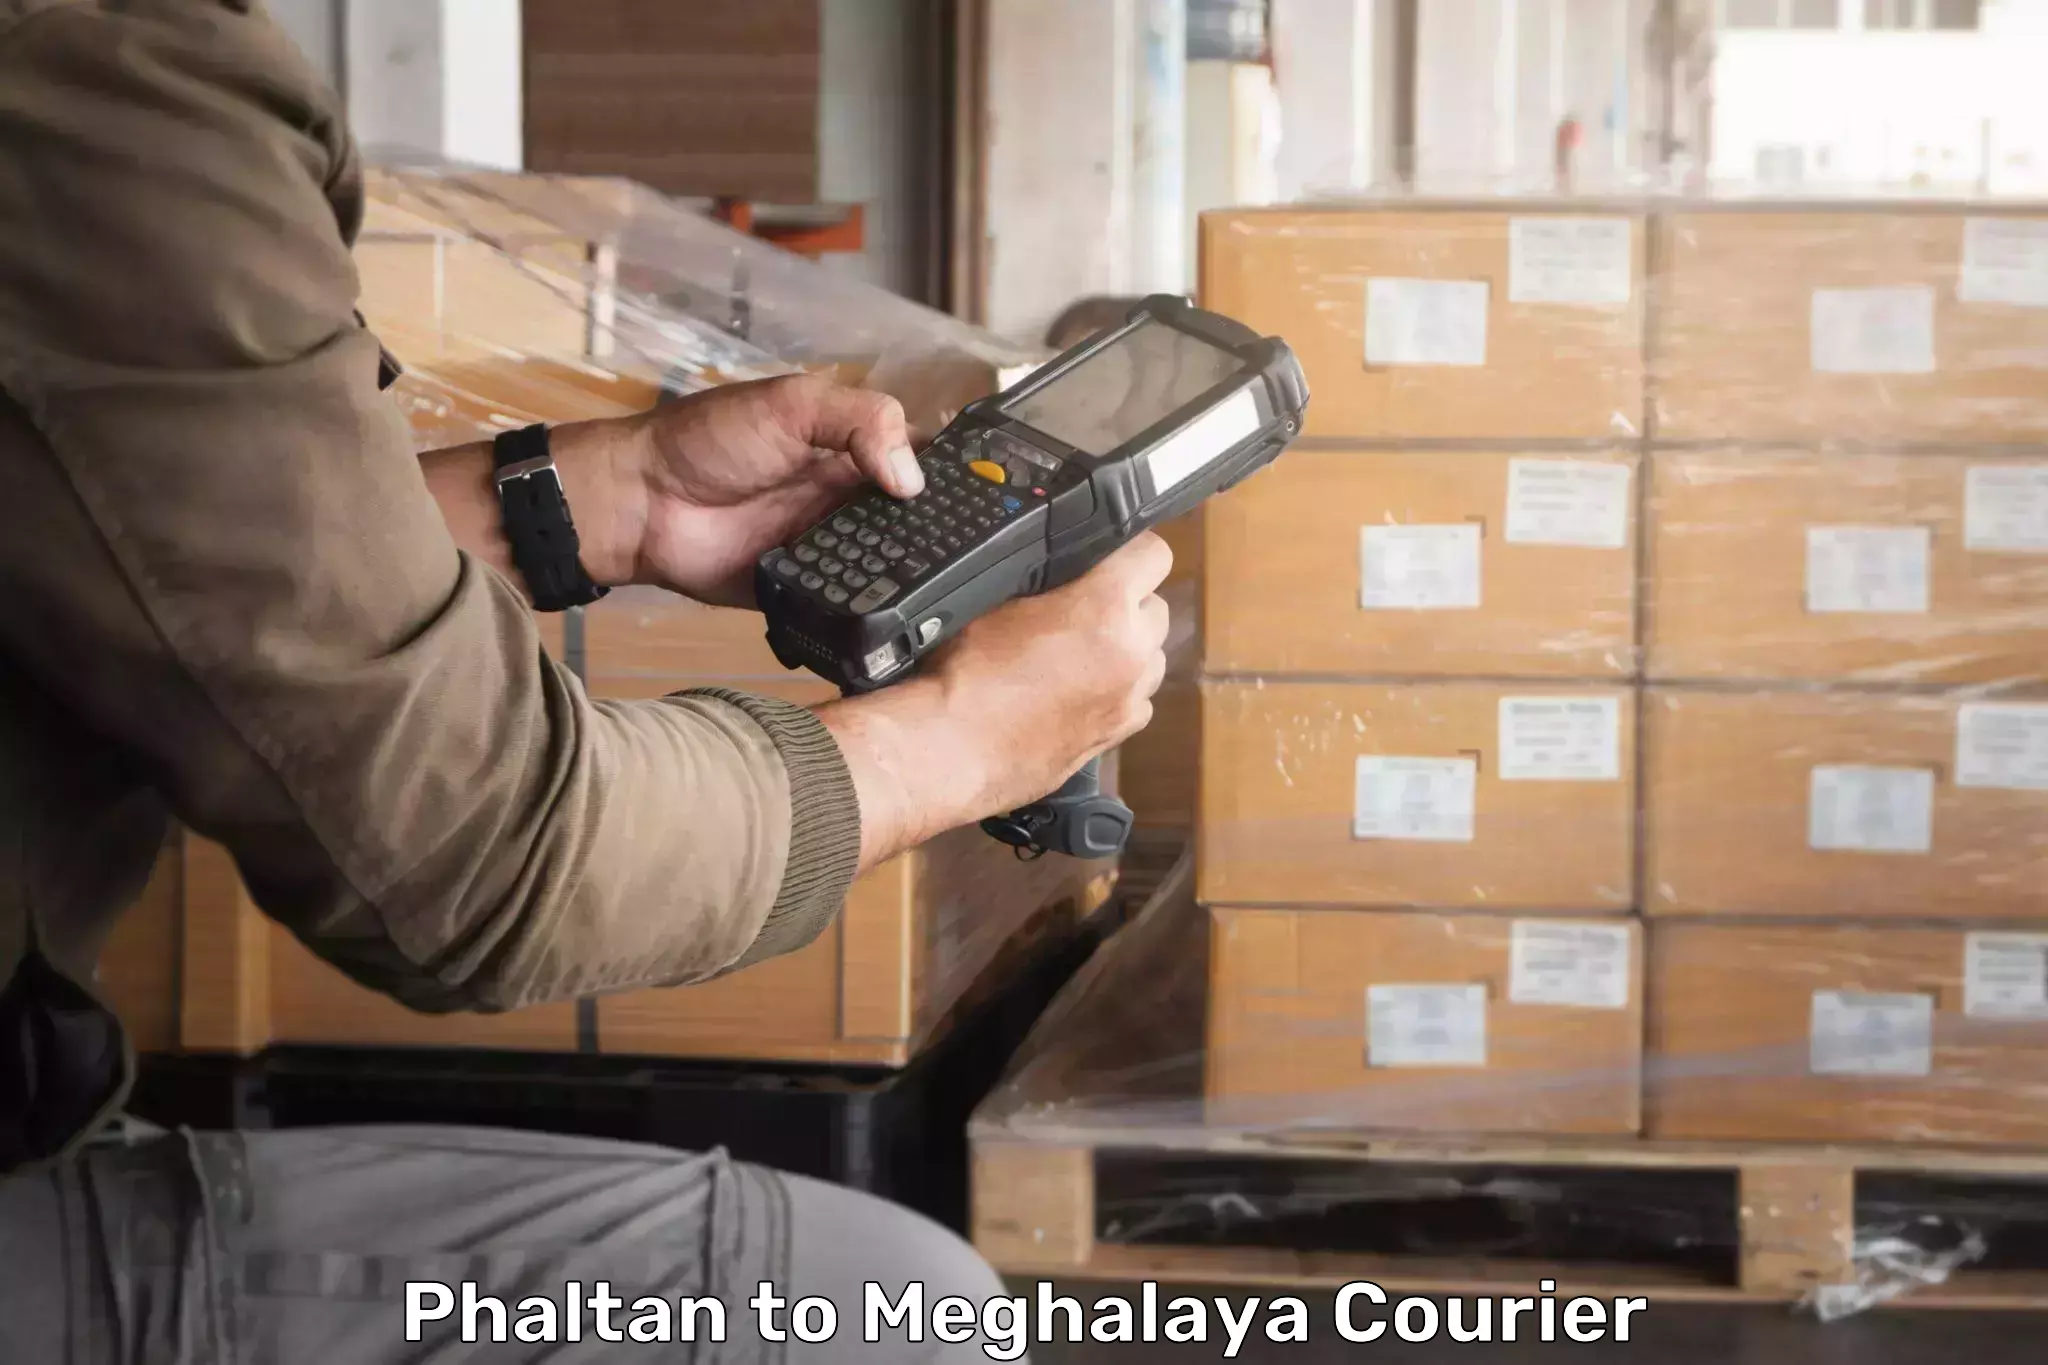 Urban courier service Phaltan to Nongpoh